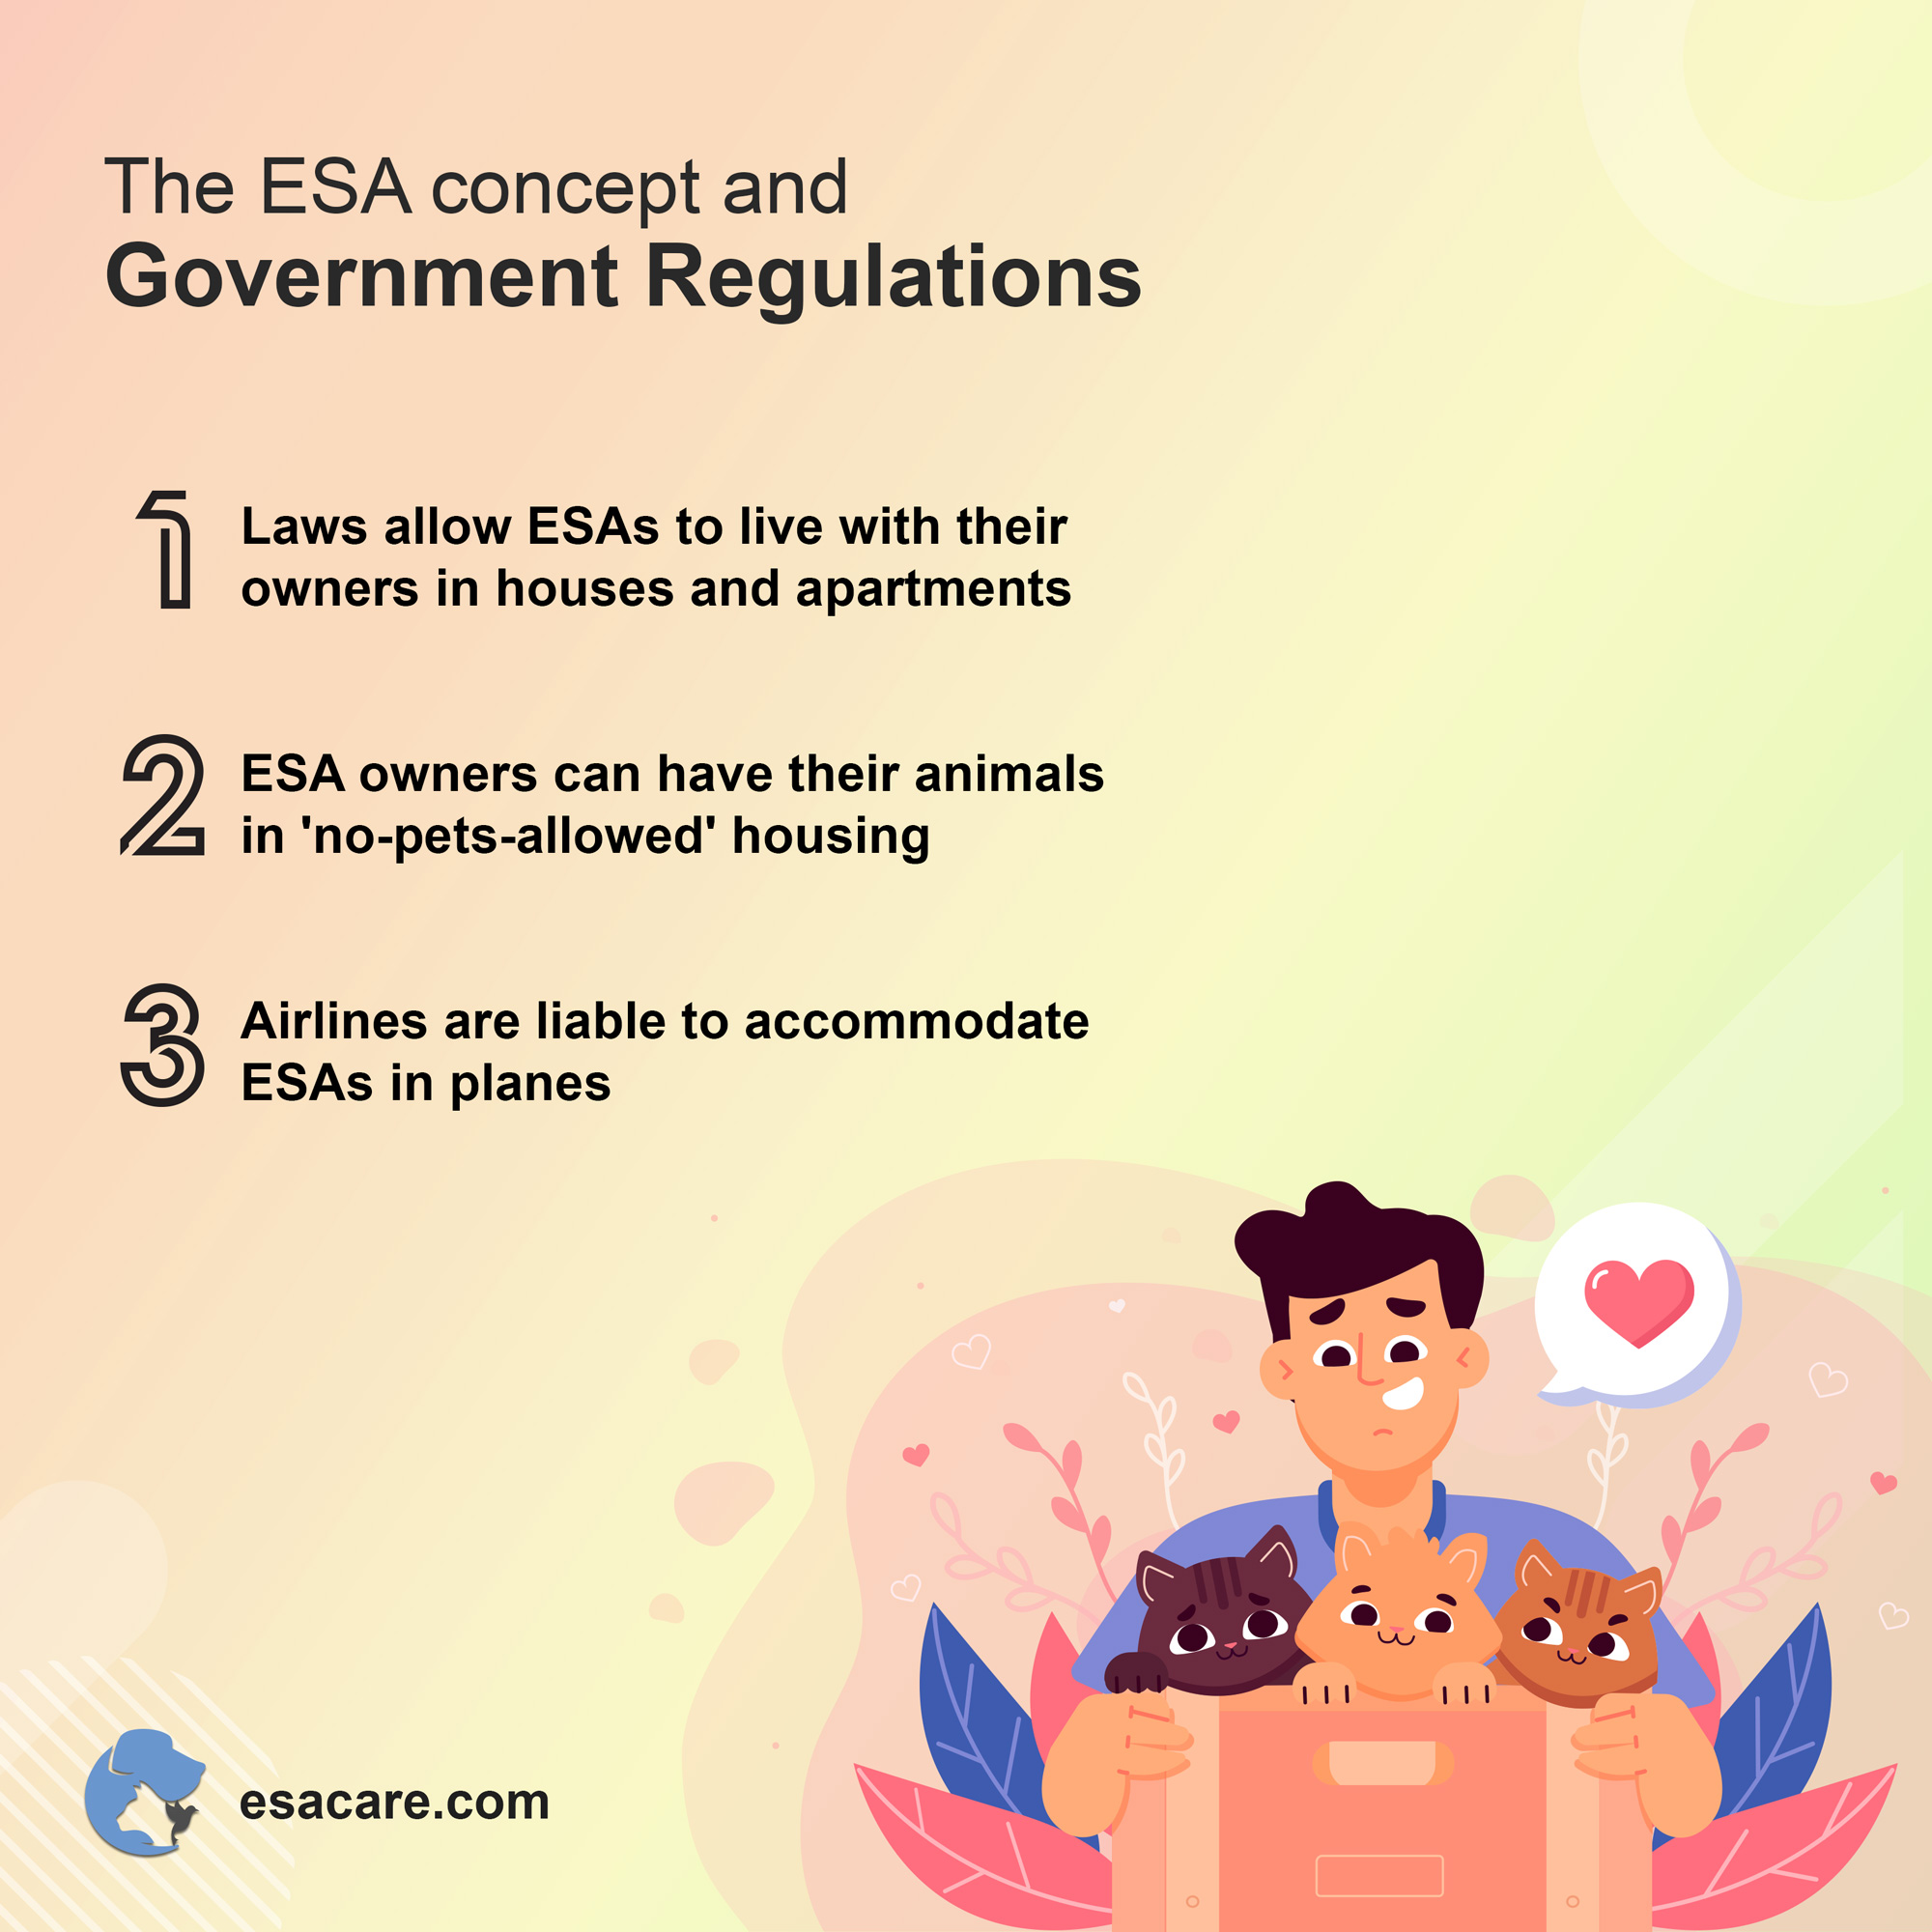 ESA laws